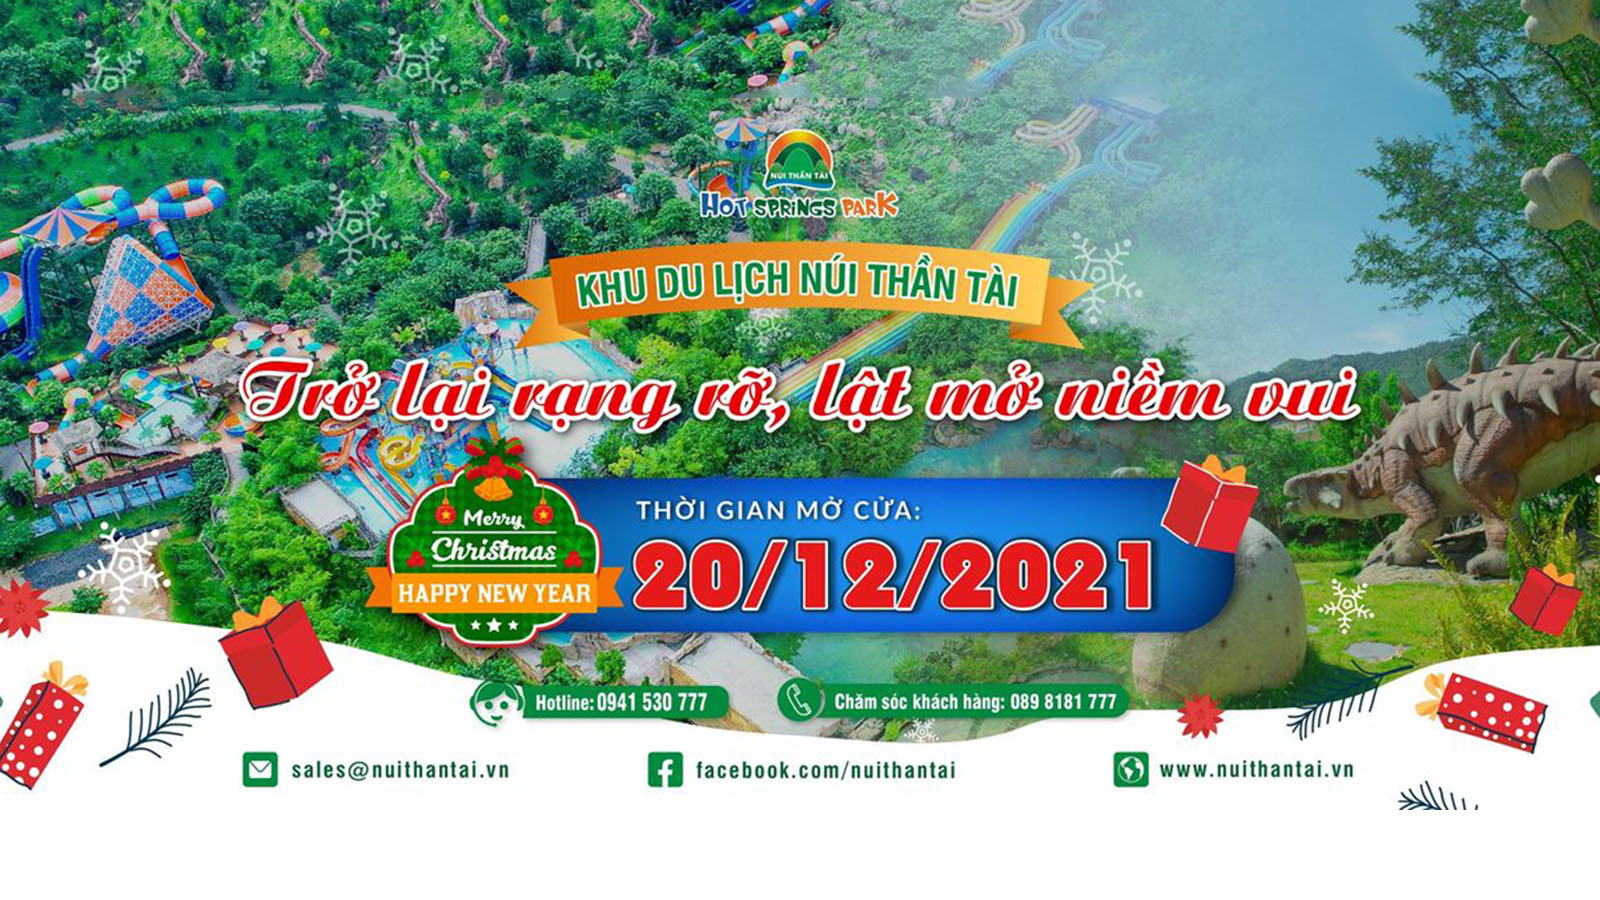 Từ ngày 20.12.2021 Cȏng Viên Suối Khoáng Nόng Núi Thần Tài mở cửa trở lại - Cổng thȏng tin du lịch thành phố Đà Nẵng